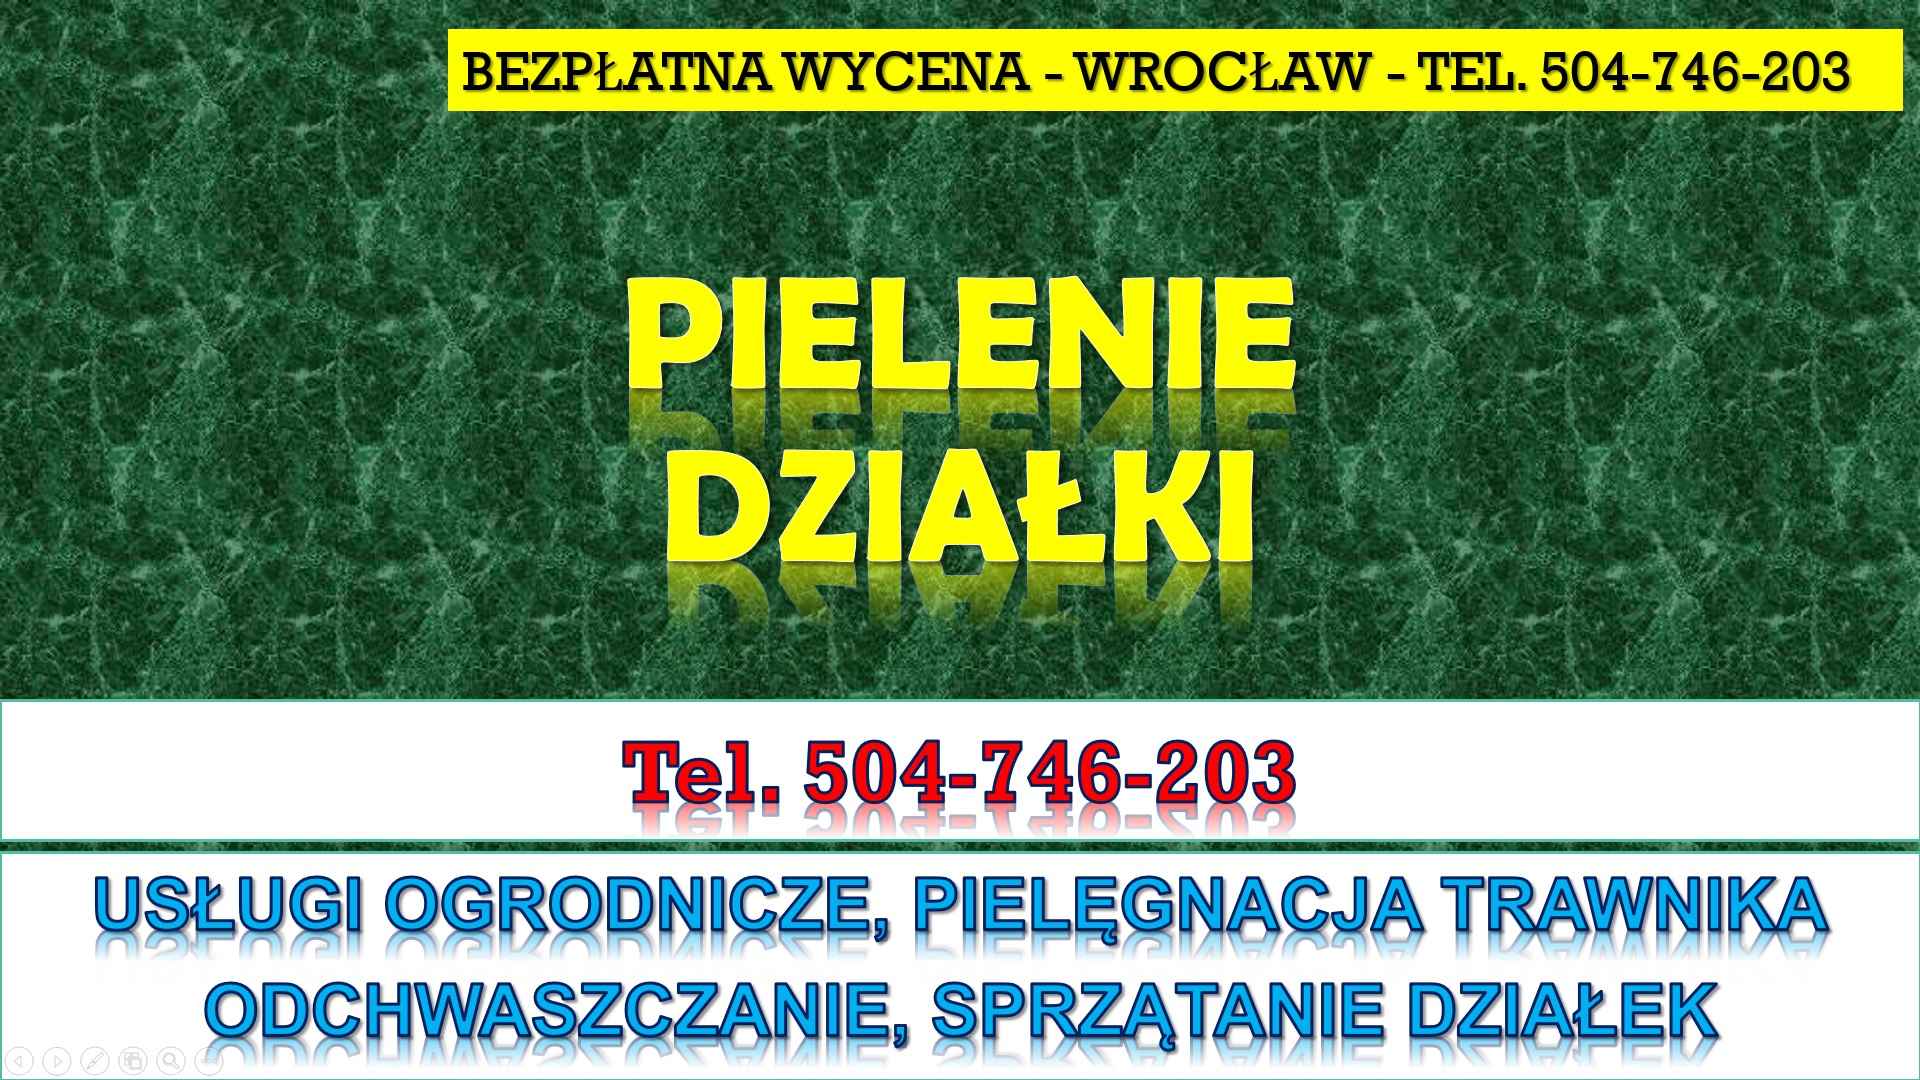 Pielenie działki, cena, tel. 504-746-203. Wrocław. Odchwaszczenie. Psie Pole - zdjęcie 1